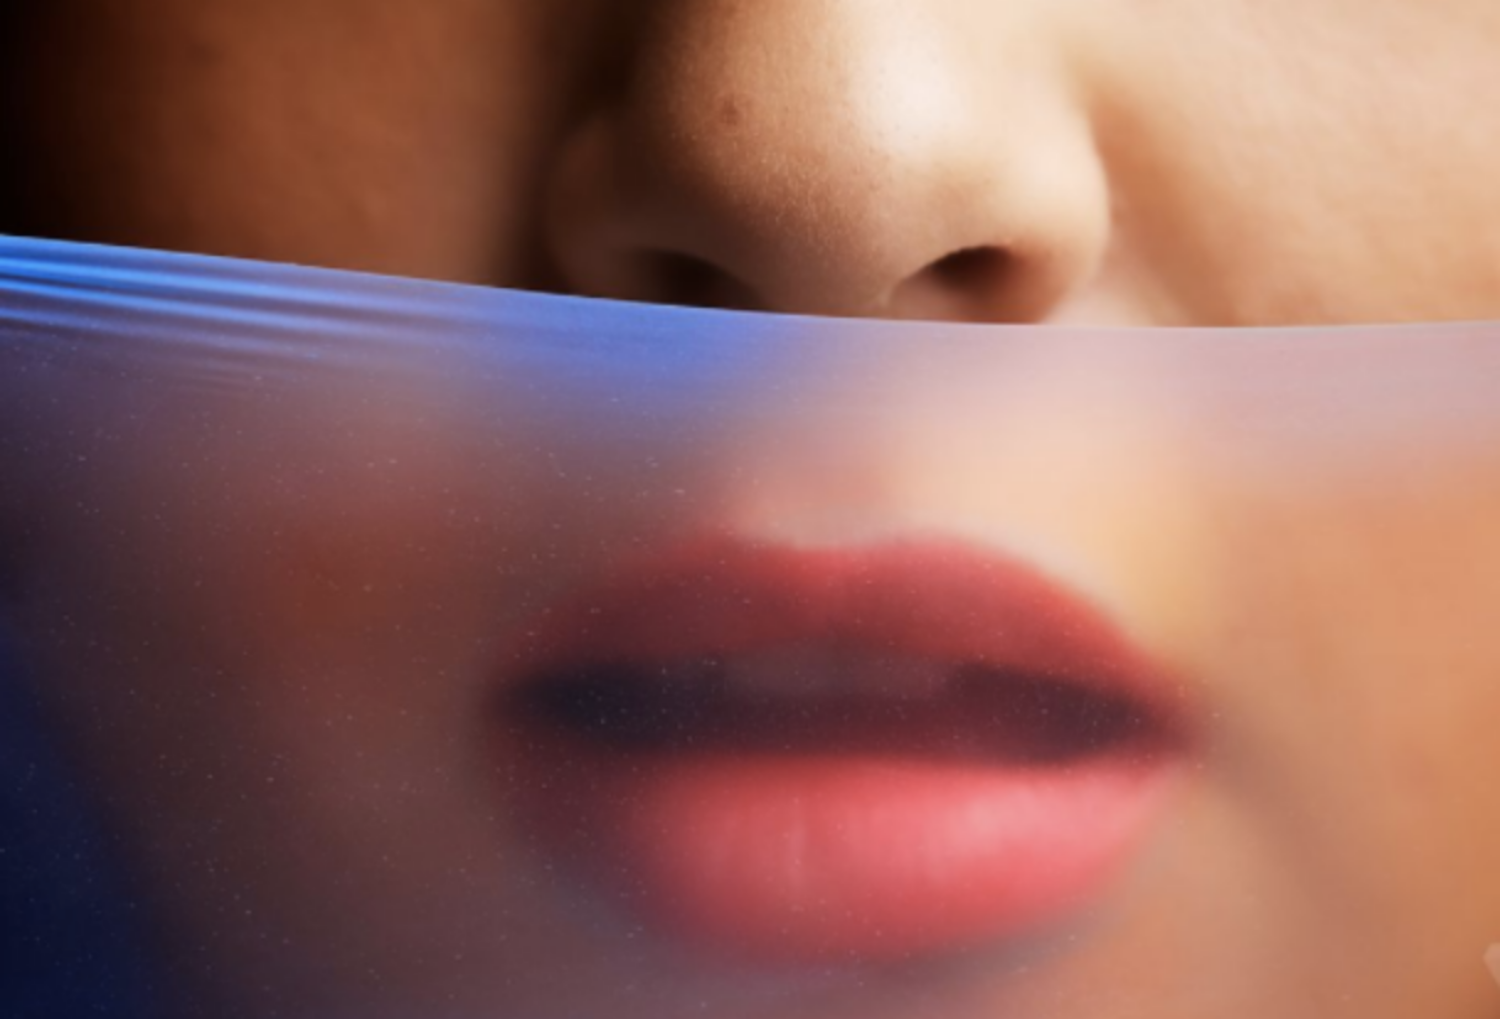 Màng chắn miệng có hiệu quả trong việc ngăn chặn lây nhiễm các bệnh lây truyền qua quan hệ tình dục không?
